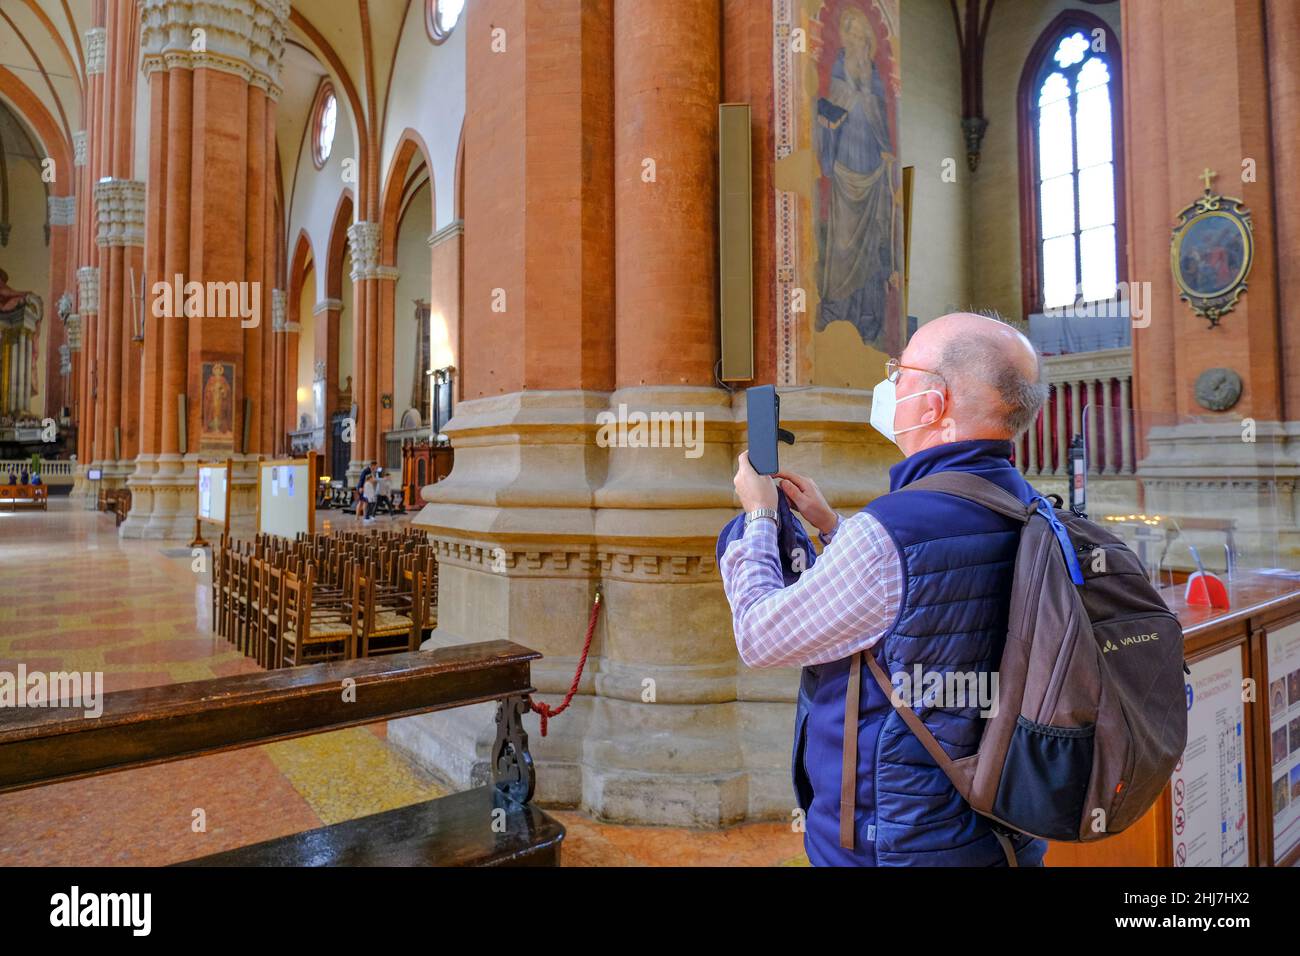 Bologne, Italie: Homme aîné portant un masque médical et faisant la photo avec un smartphone dans la basilique de San Petronio sur la place, P Banque D'Images